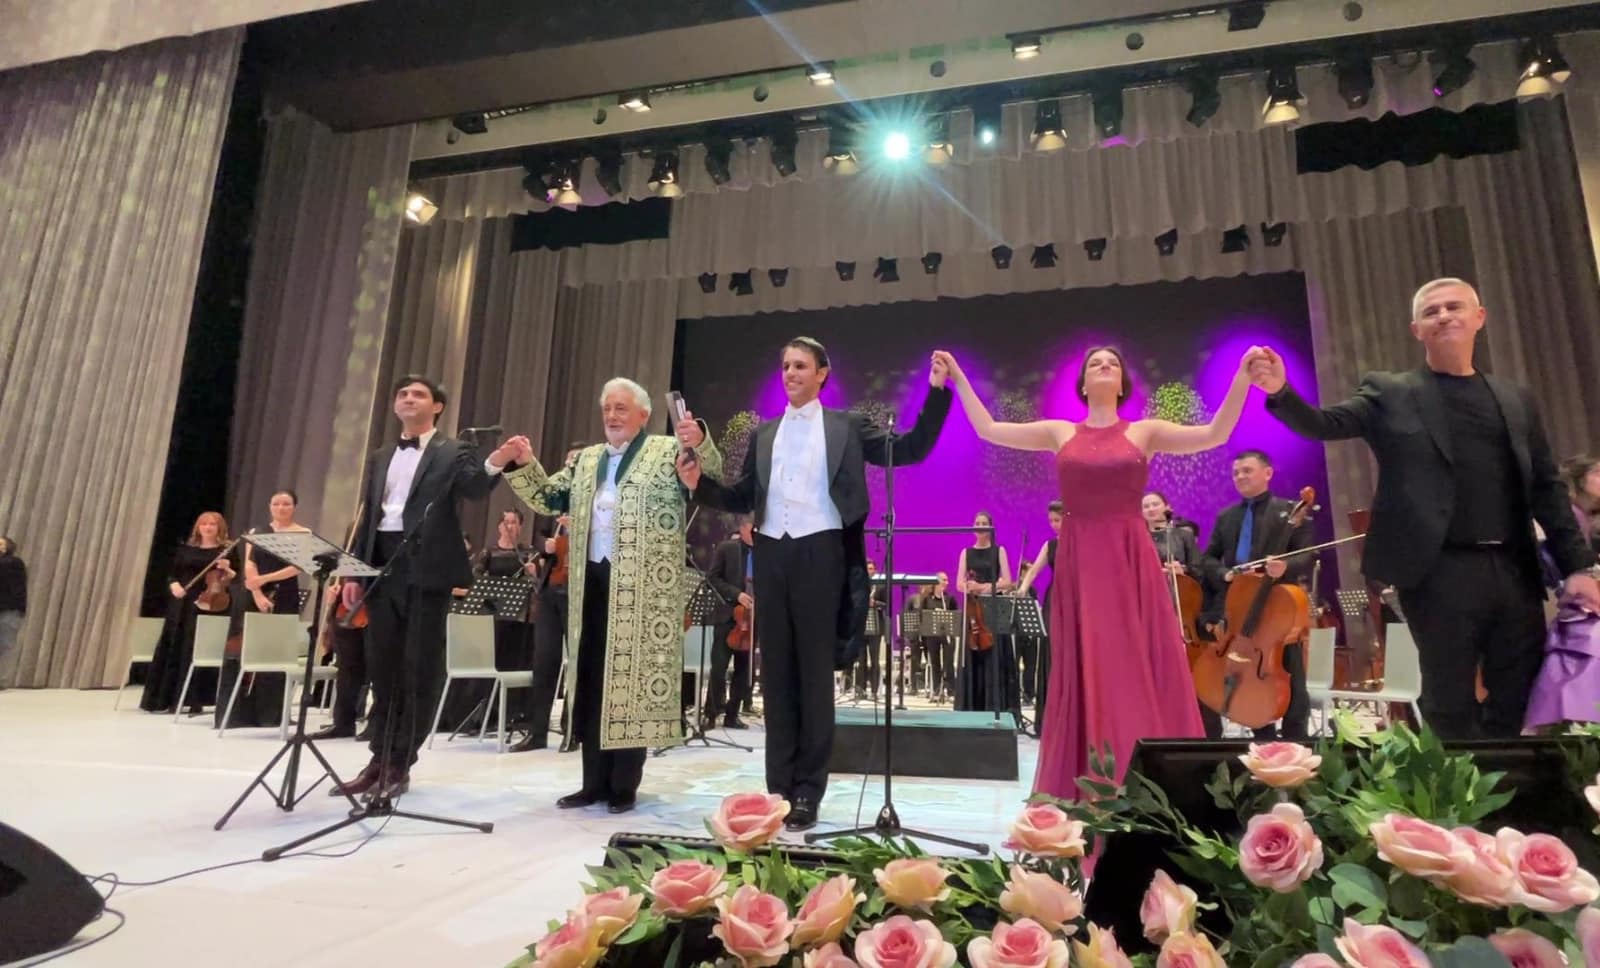 Tenorul Alessandro Safina a susținut un concert fabulos alături de Placido Domingo